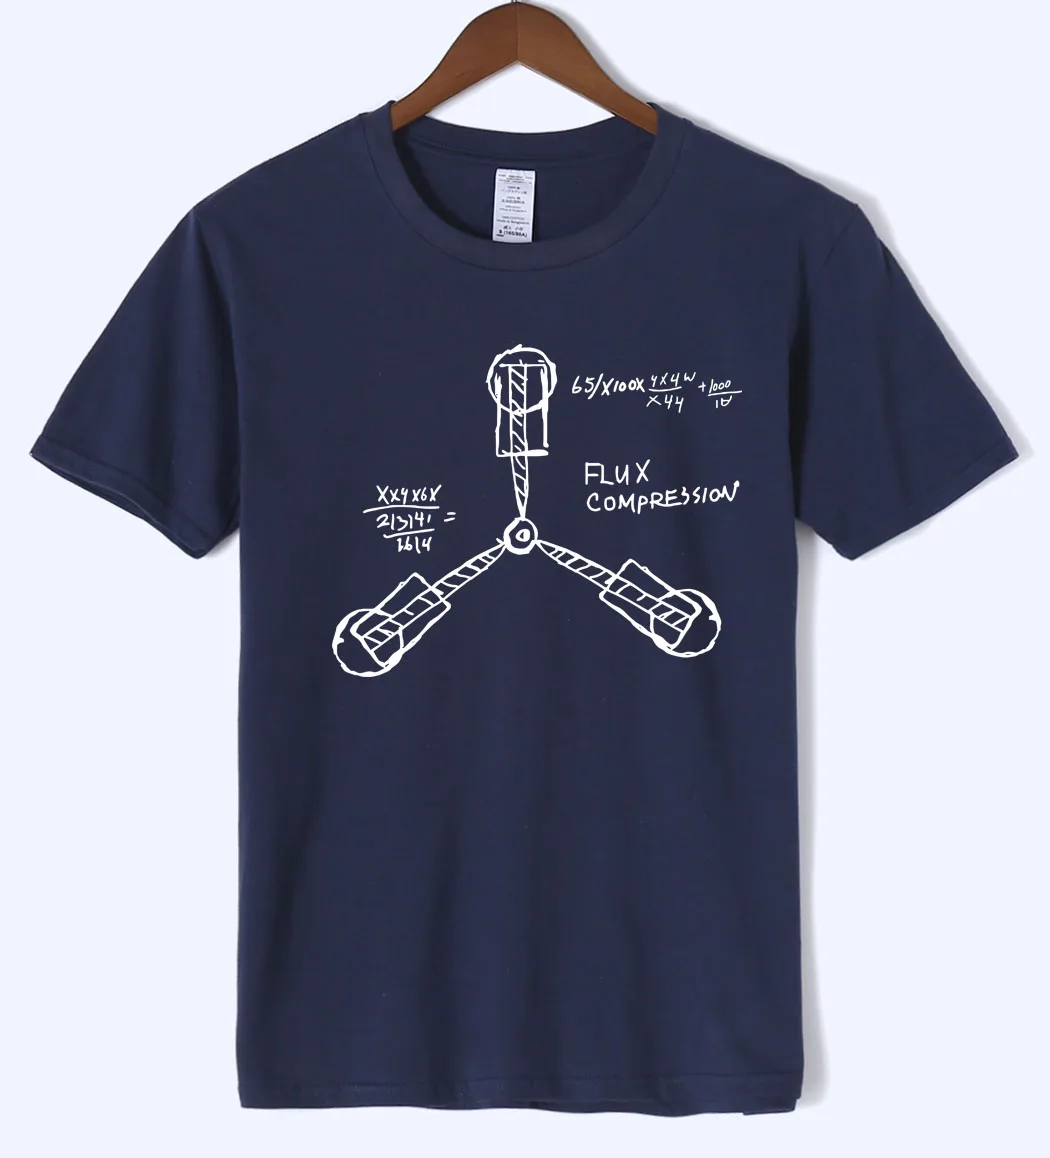 Nueva llegada de nuevo al futuro hombres camiseta 2018 Ciencia de verano divertida camiseta de los hombres 100% de algodón de alta calidad Camiseta de manga corta